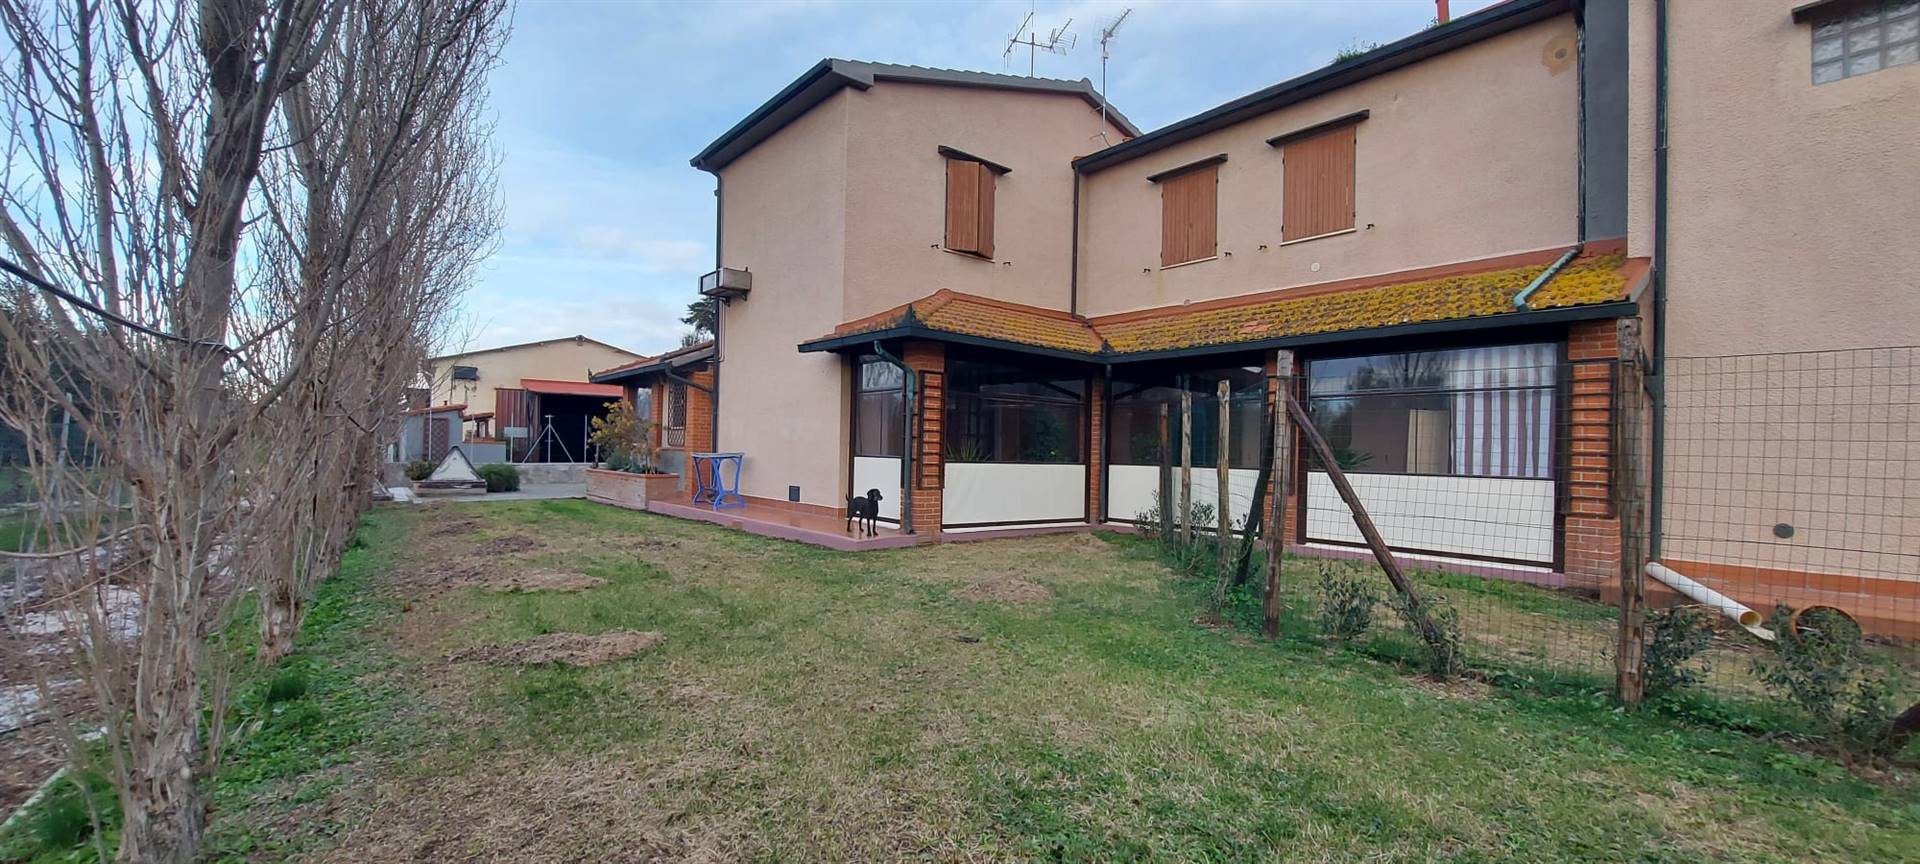 Rustico / Casale in vendita a Piombino, 5 locali, zona orto, prezzo € 283.000 | PortaleAgenzieImmobiliari.it